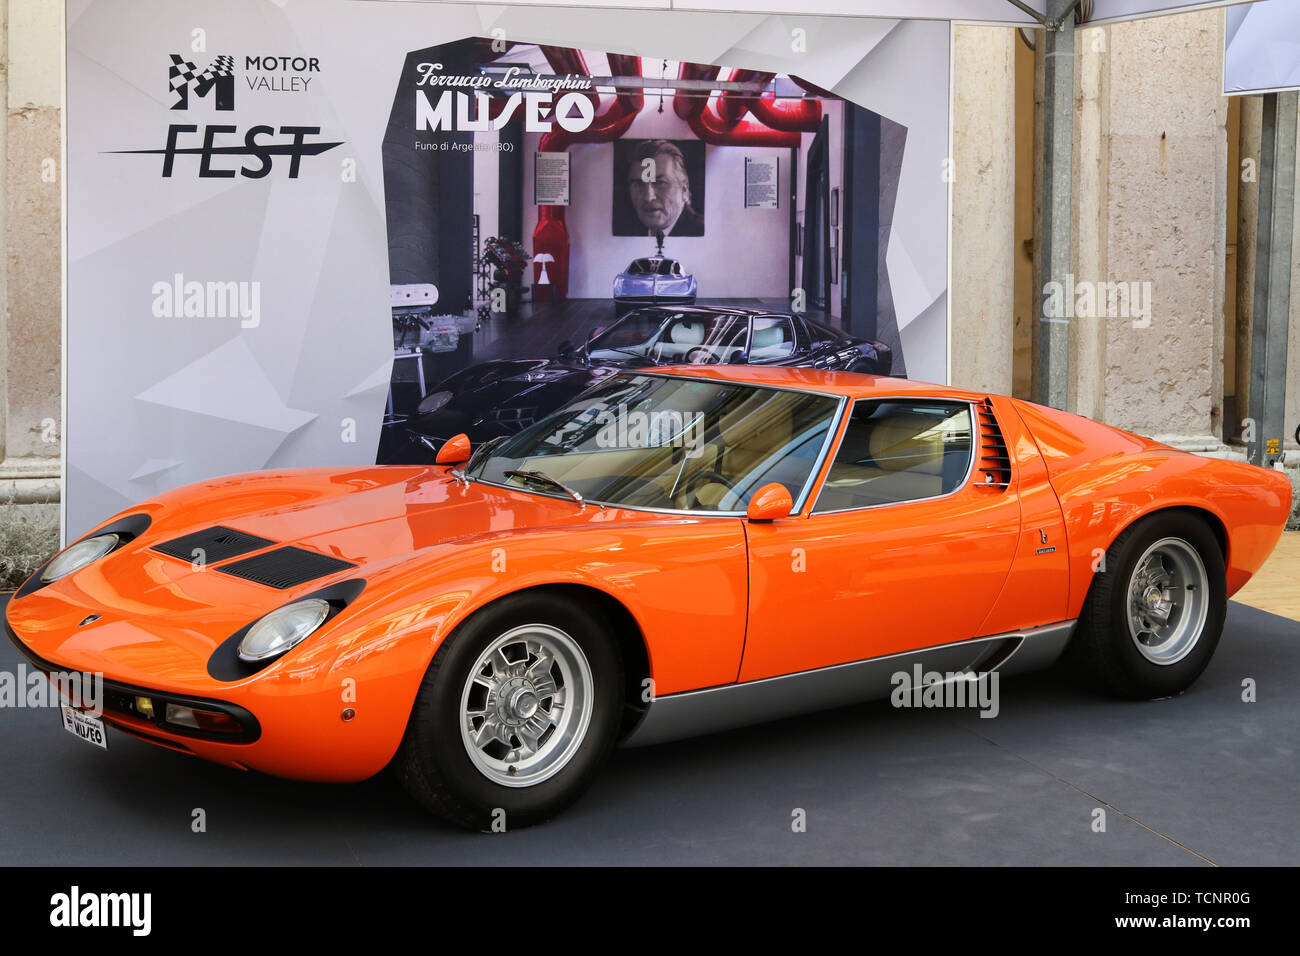 MODENA, ITALY, May 16 2019 - Motor Valley Fest exhibition, Lamborghini Miura vintage car Stock Photo